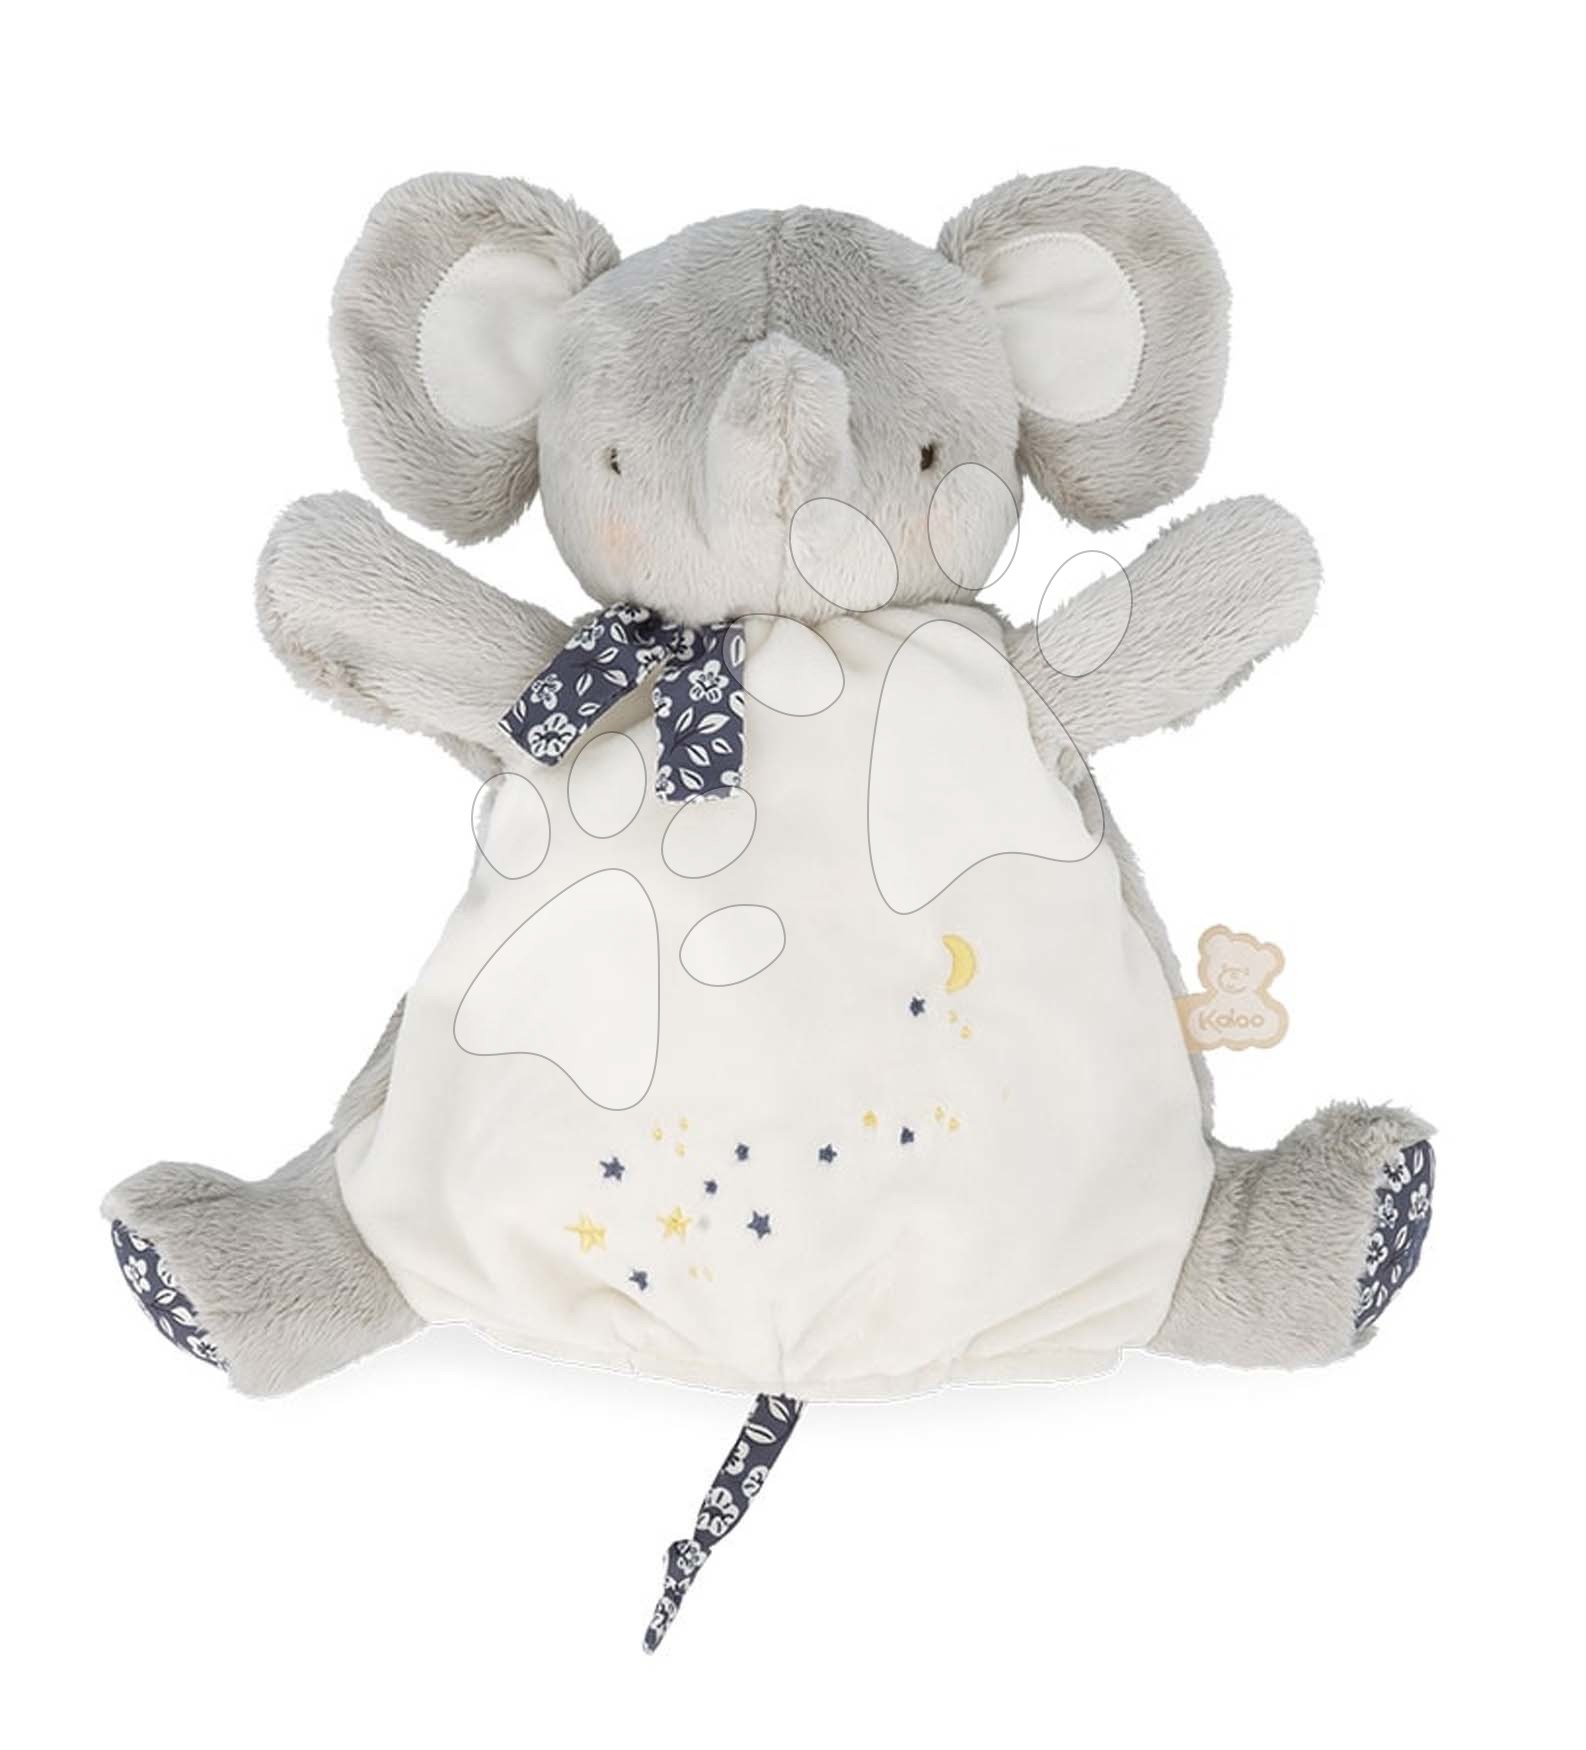 Plüss elefánt kesztyűbáb Elephant Doudou Puppet Petites Chansons Kaloo szürke 24 cm puha plüssből 0 hó-tól